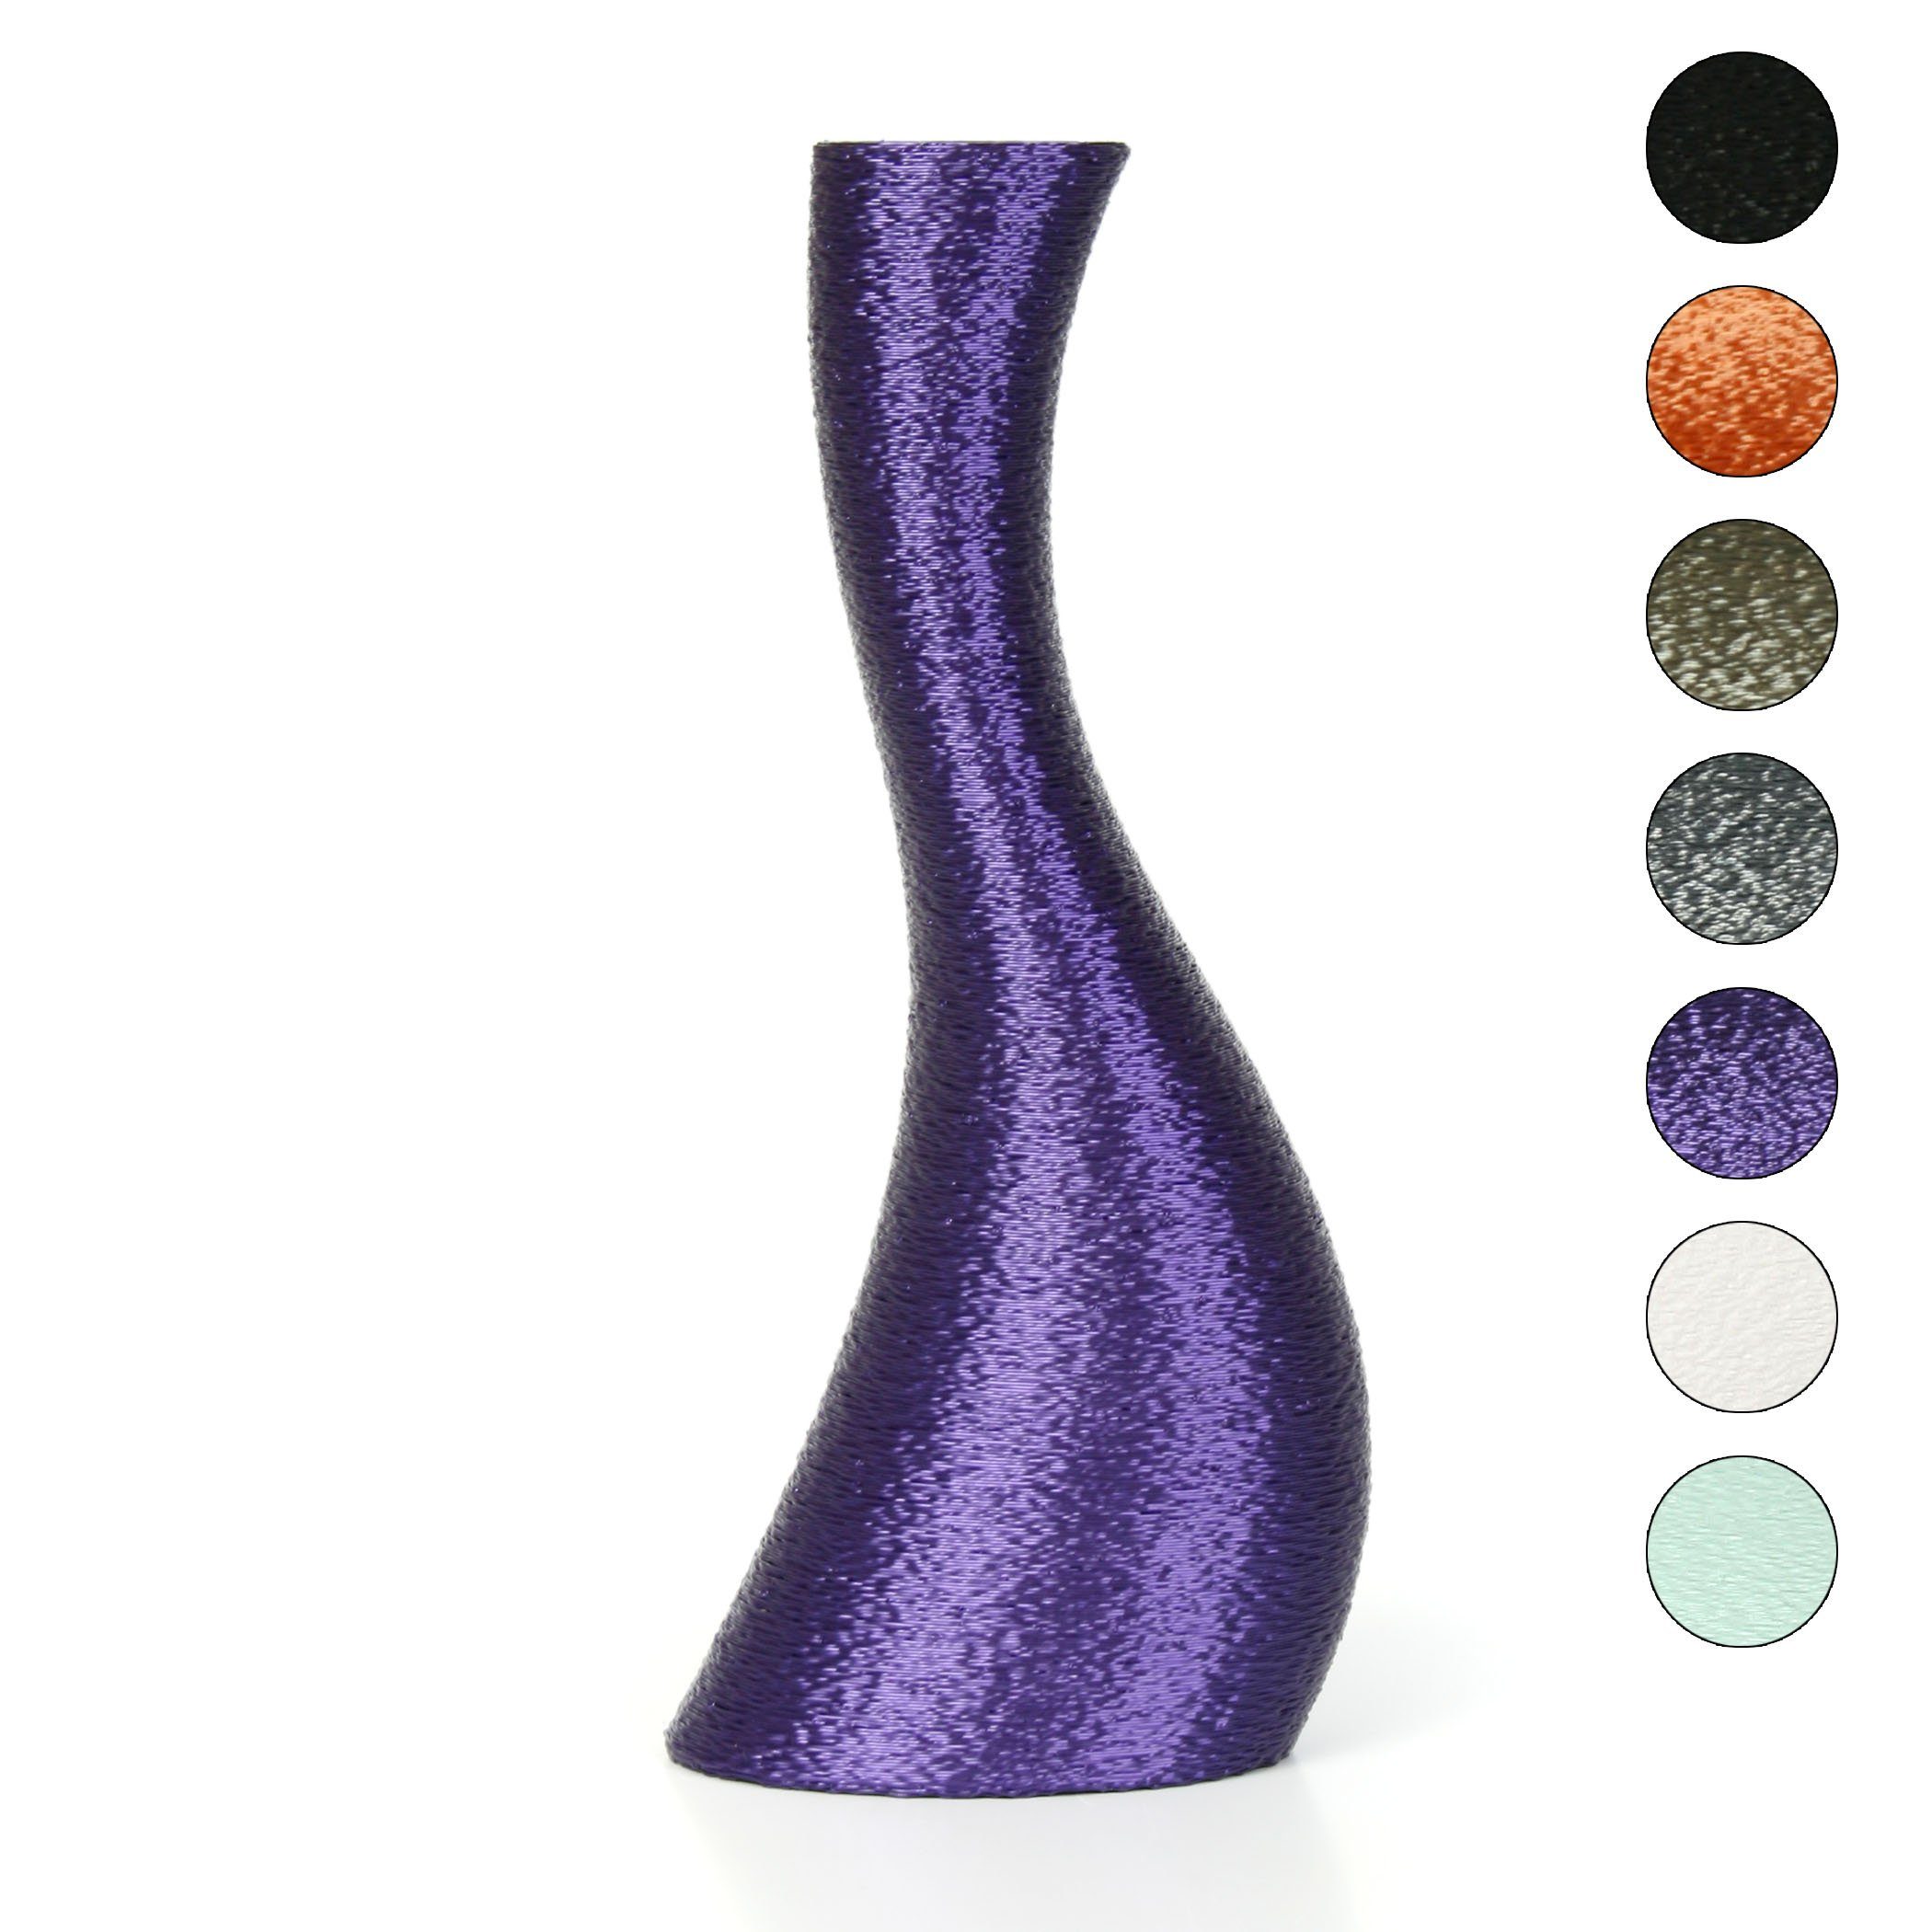 Kreative Feder Dekovase Designer Vase – Dekorative Blumenvase aus Bio-Kunststoff, aus nachwachsenden Rohstoffen; wasserdicht & bruchsicher Violet